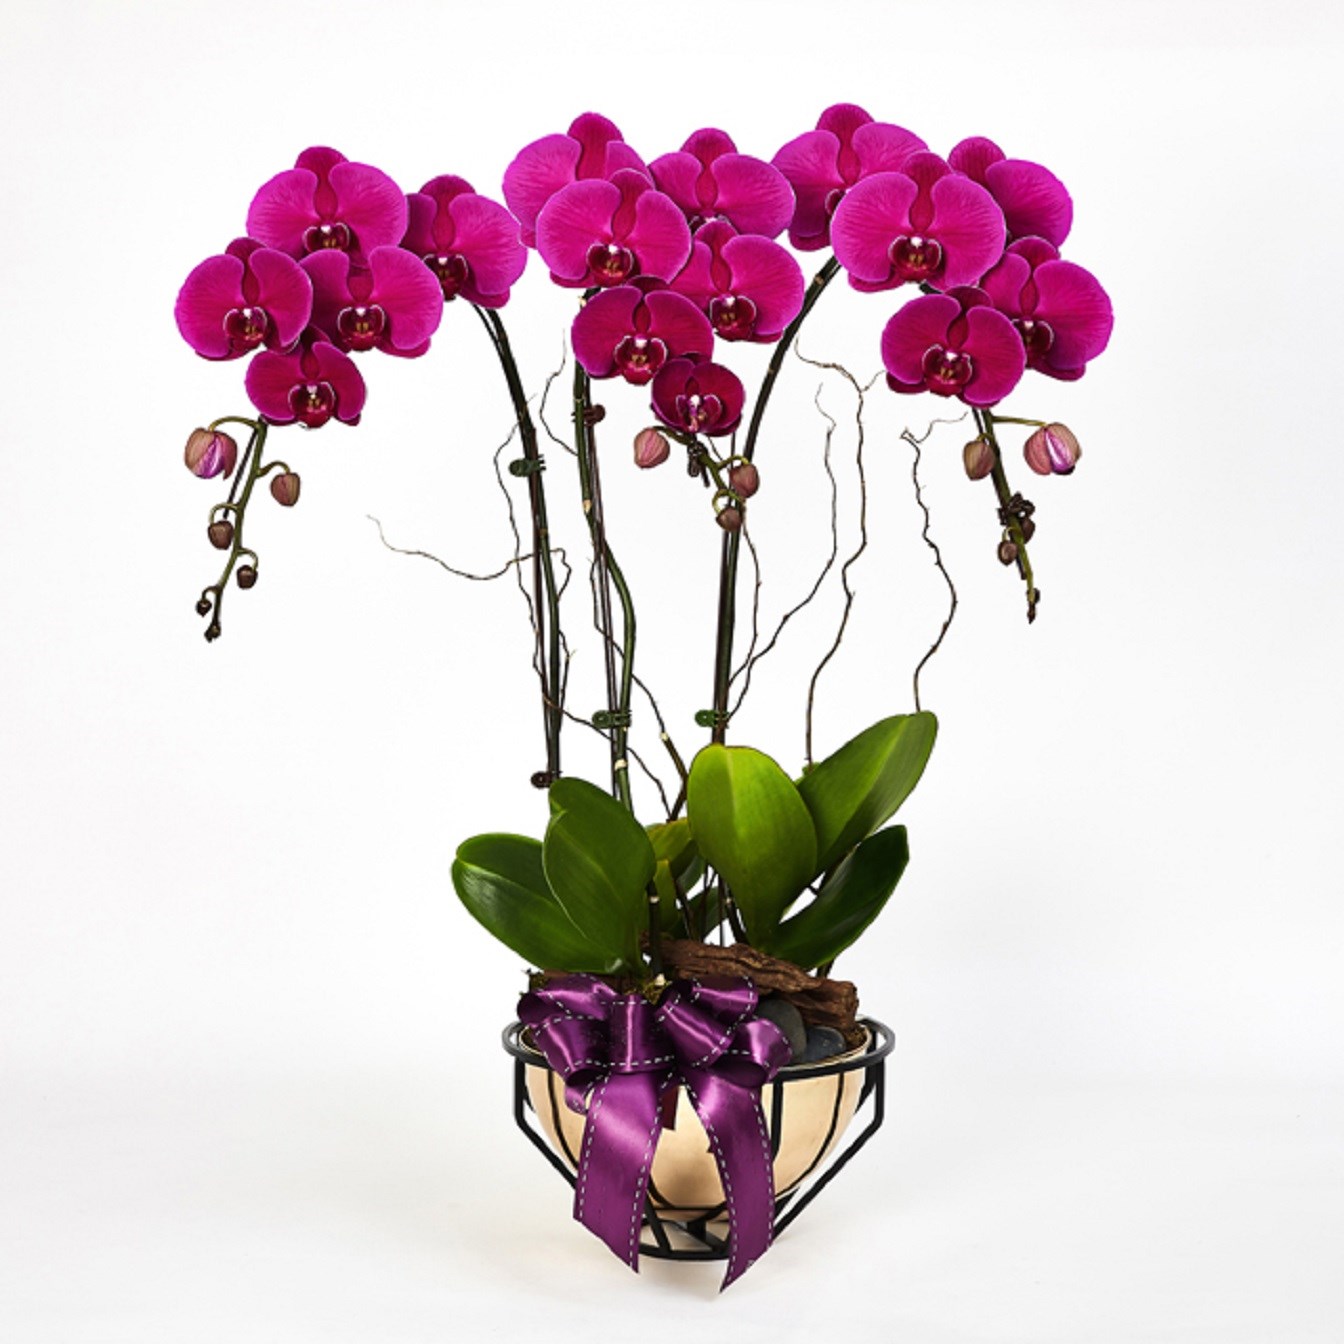 product image for Royal prosperity Purple Phalaenopsis